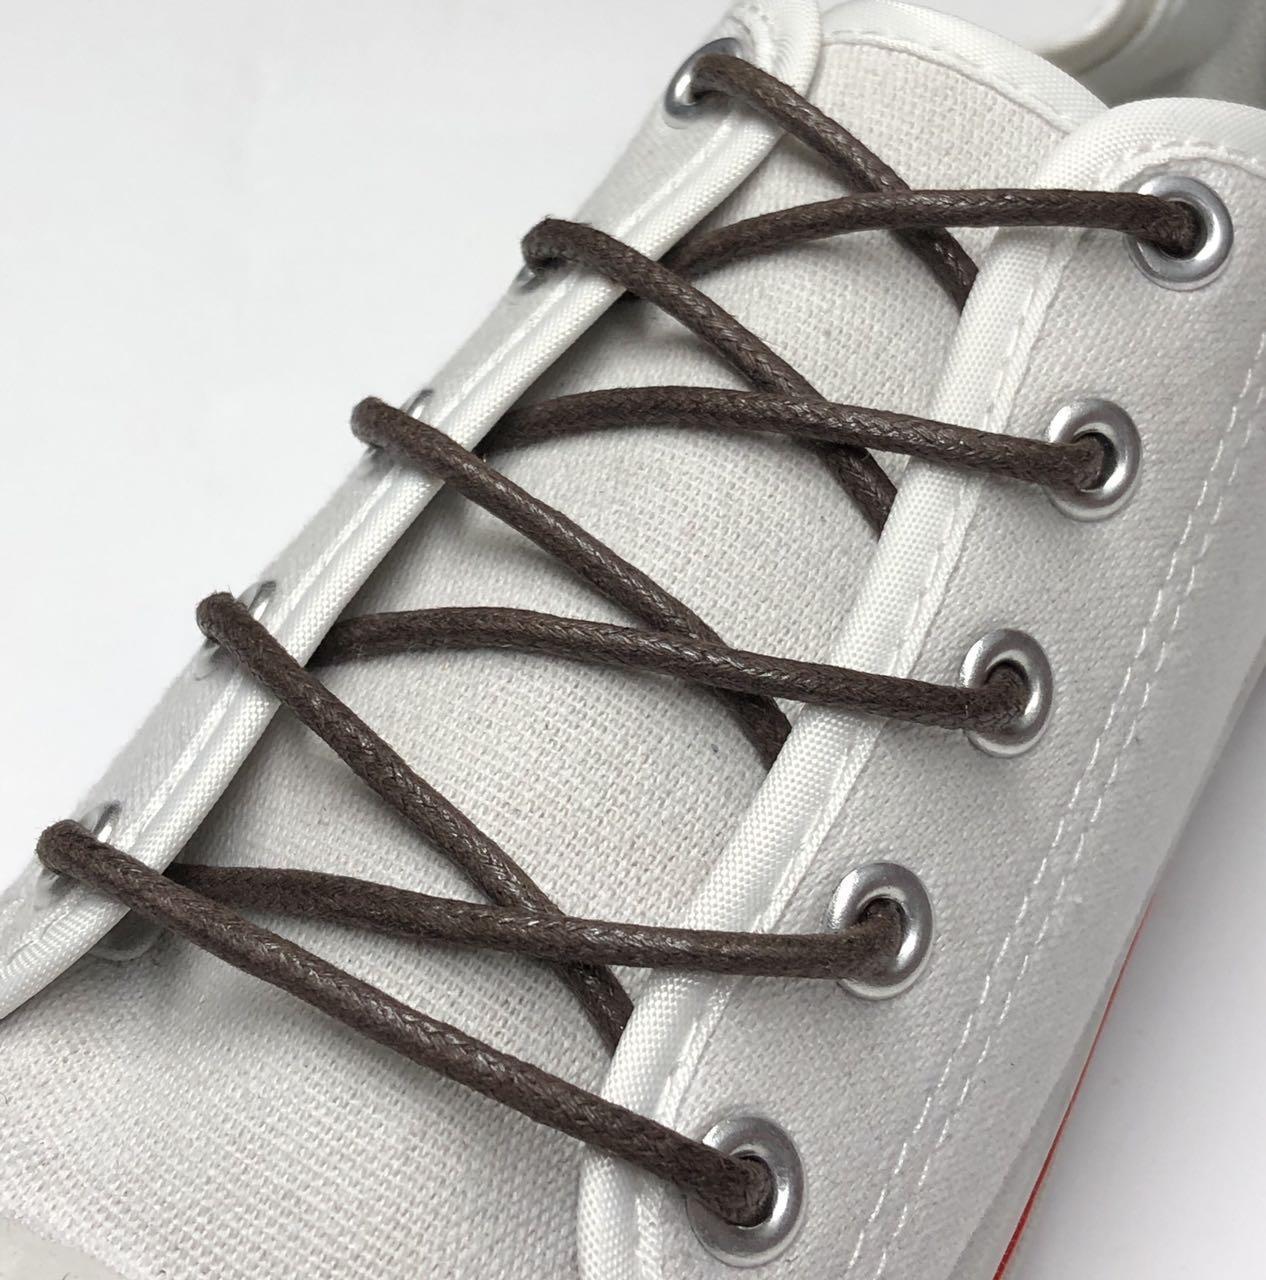 Шнурки для обуви 3 мм 120 см  / темно-коричневый (упак.36 пар) пропитка круглая / тип 1.2.8 KIWI